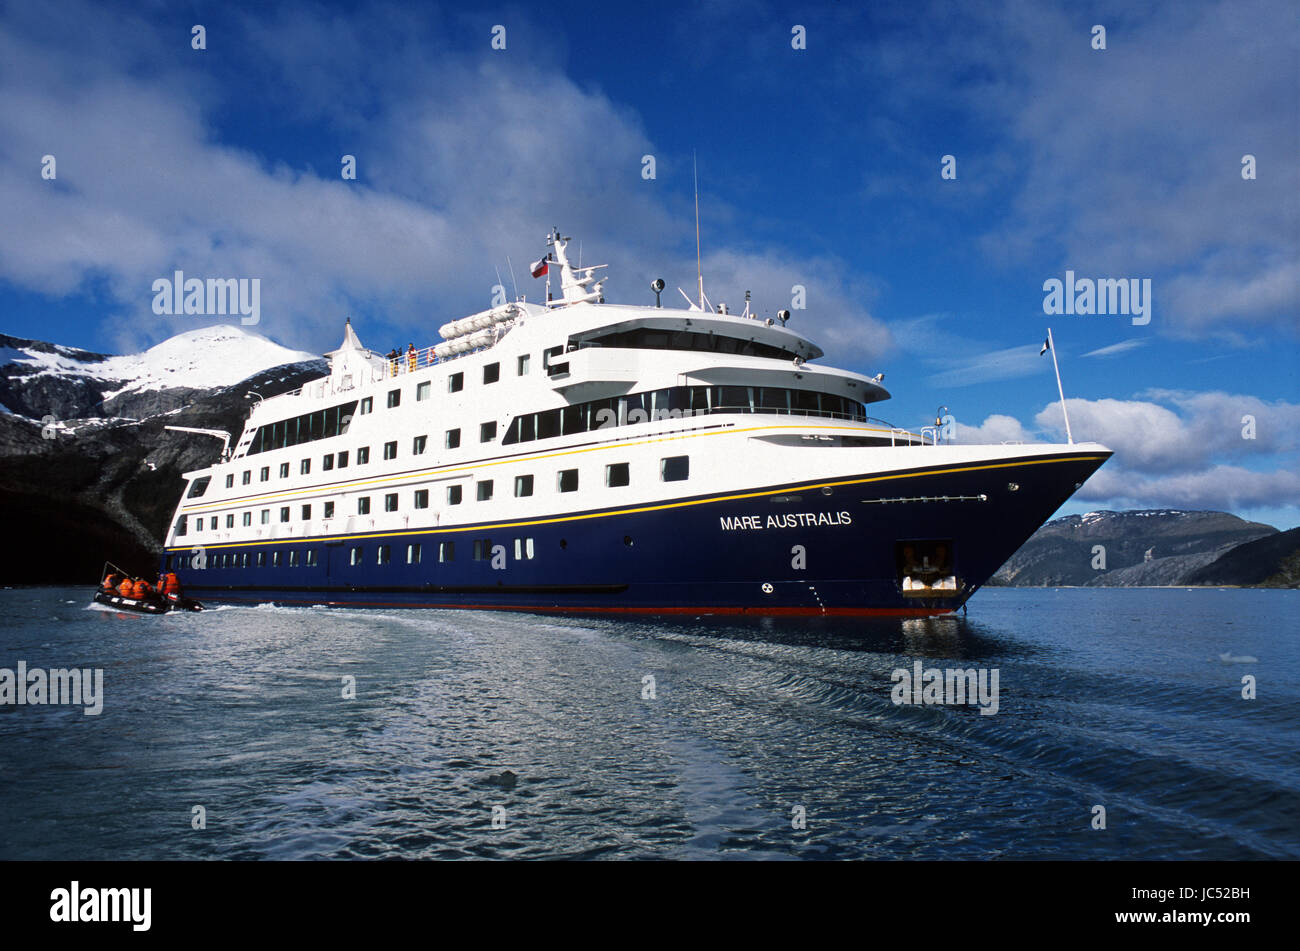 Cape horn ship immagini e fotografie stock ad alta risoluzione - Alamy